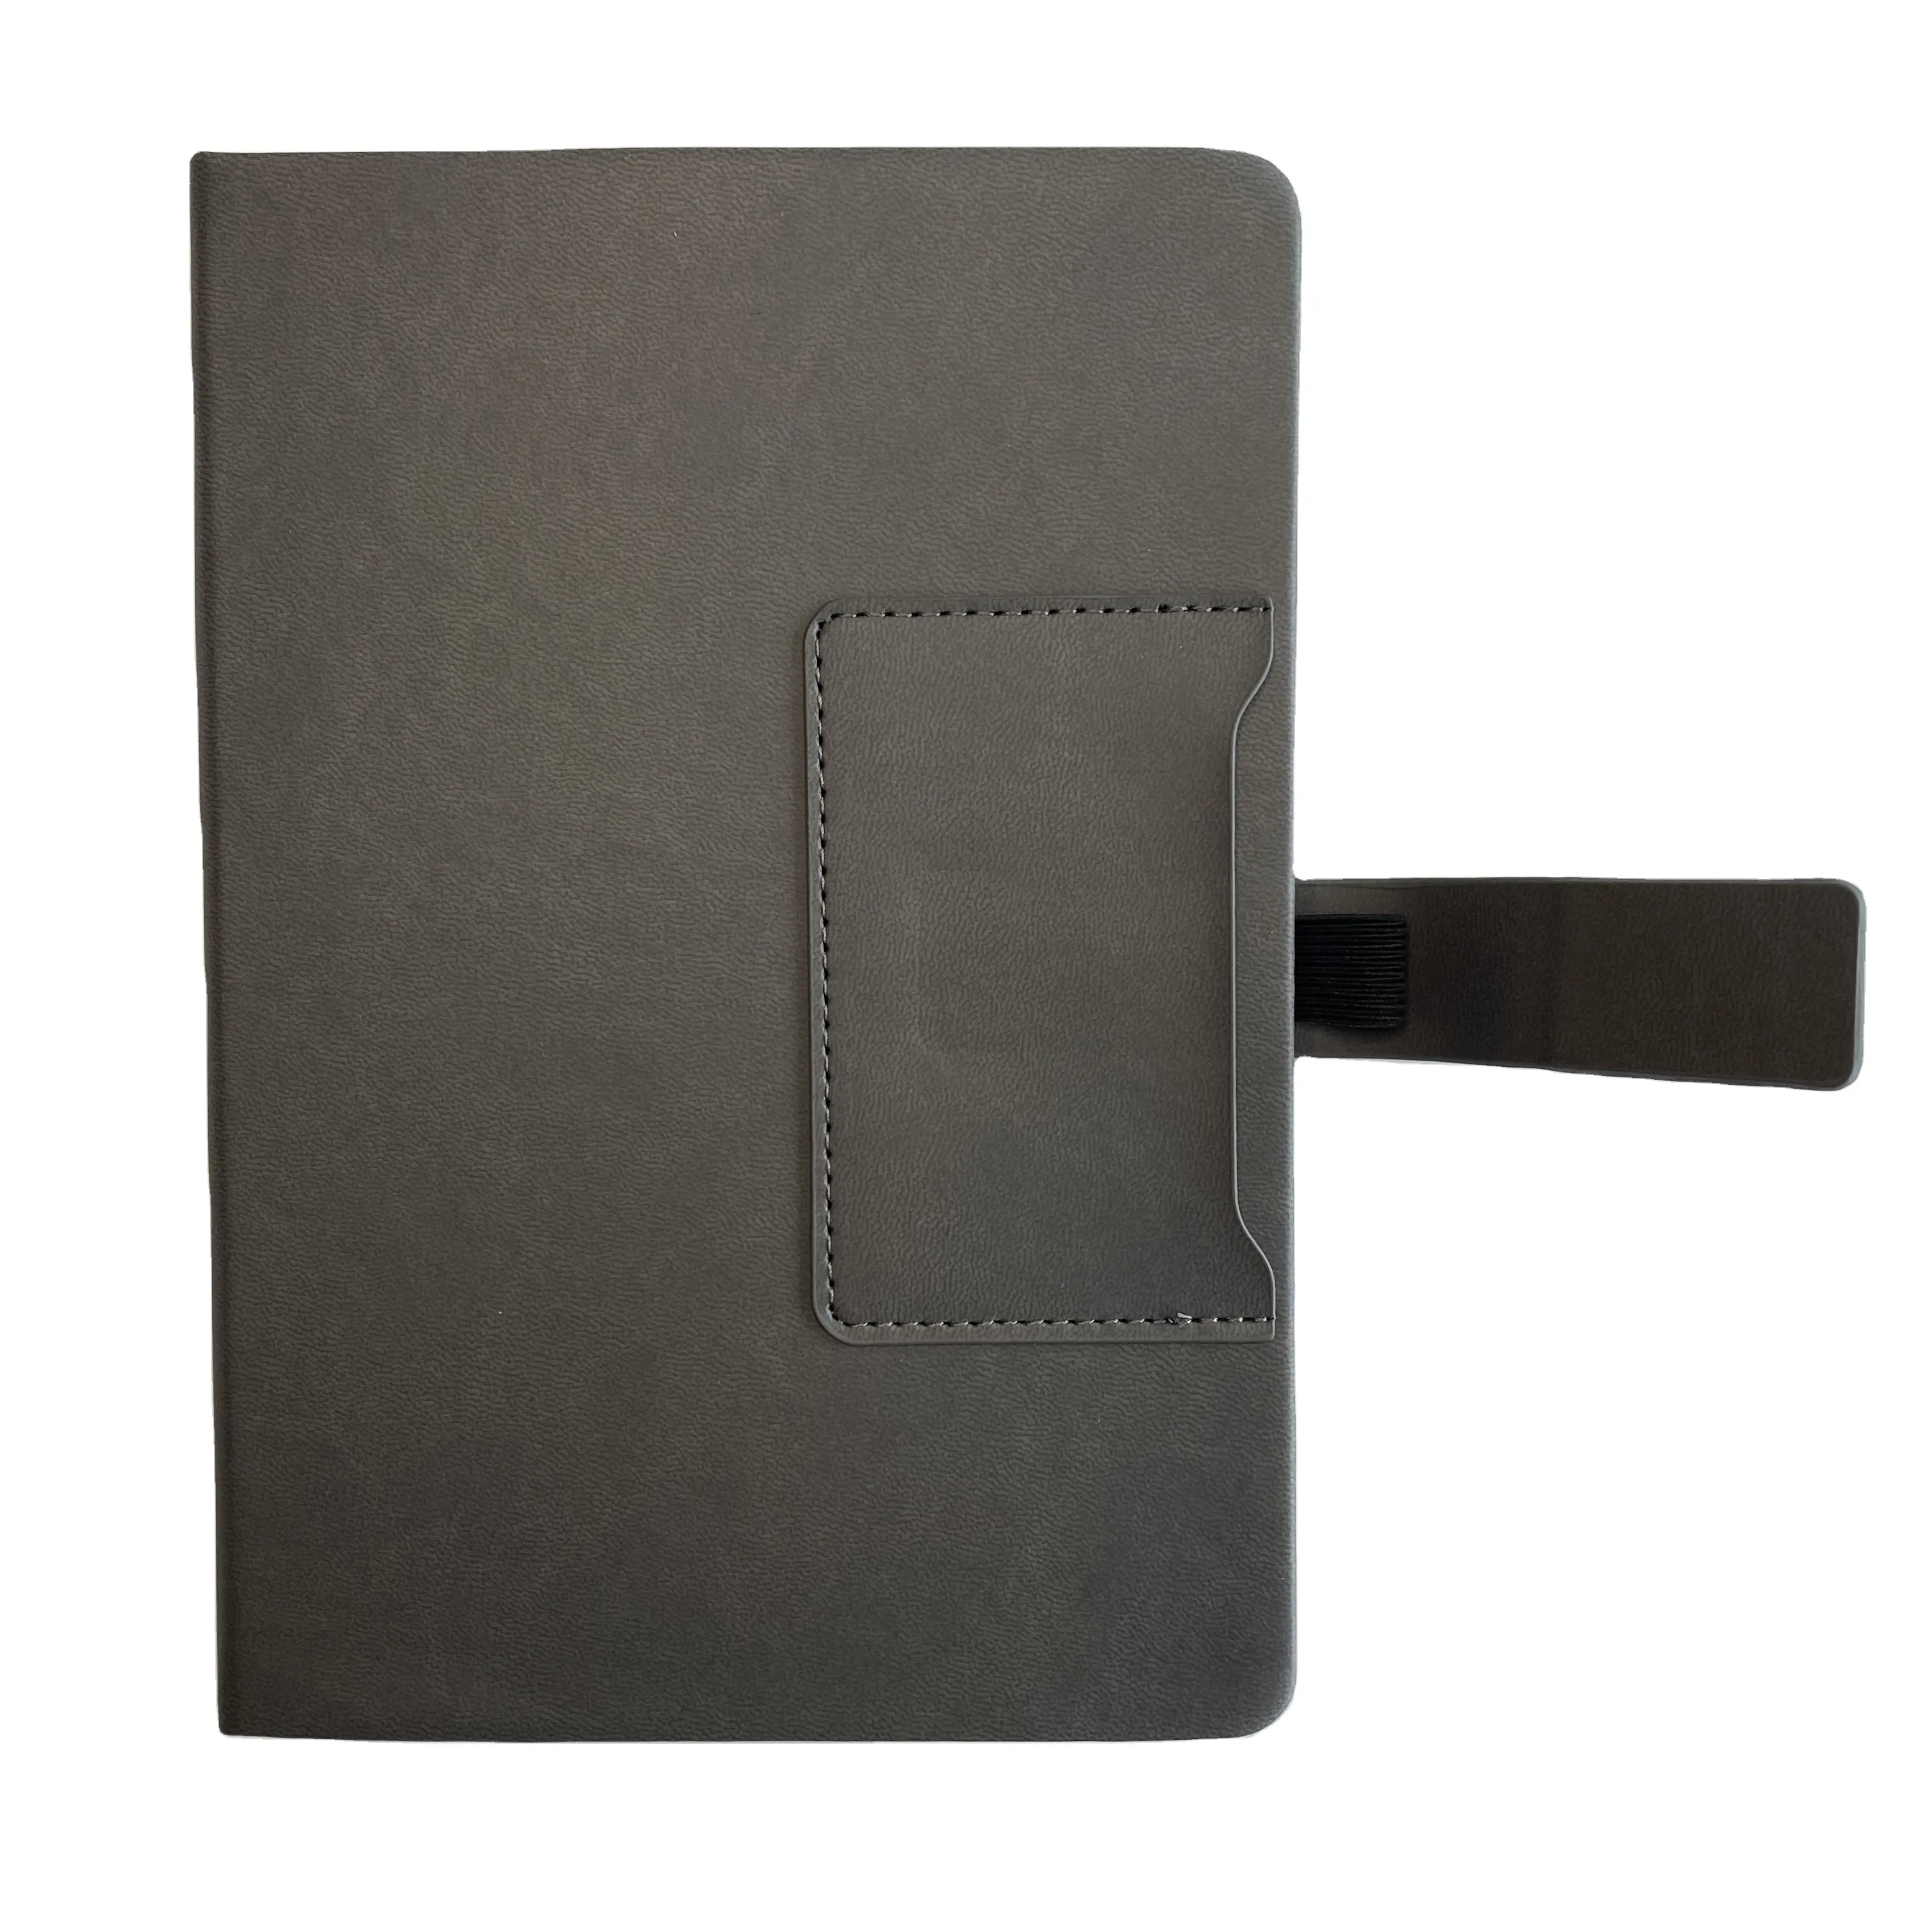 A5 all'ingrosso custom PU rilegato Notebook con slot per biglietti da visita anteriore e cover posteriore tasca interna